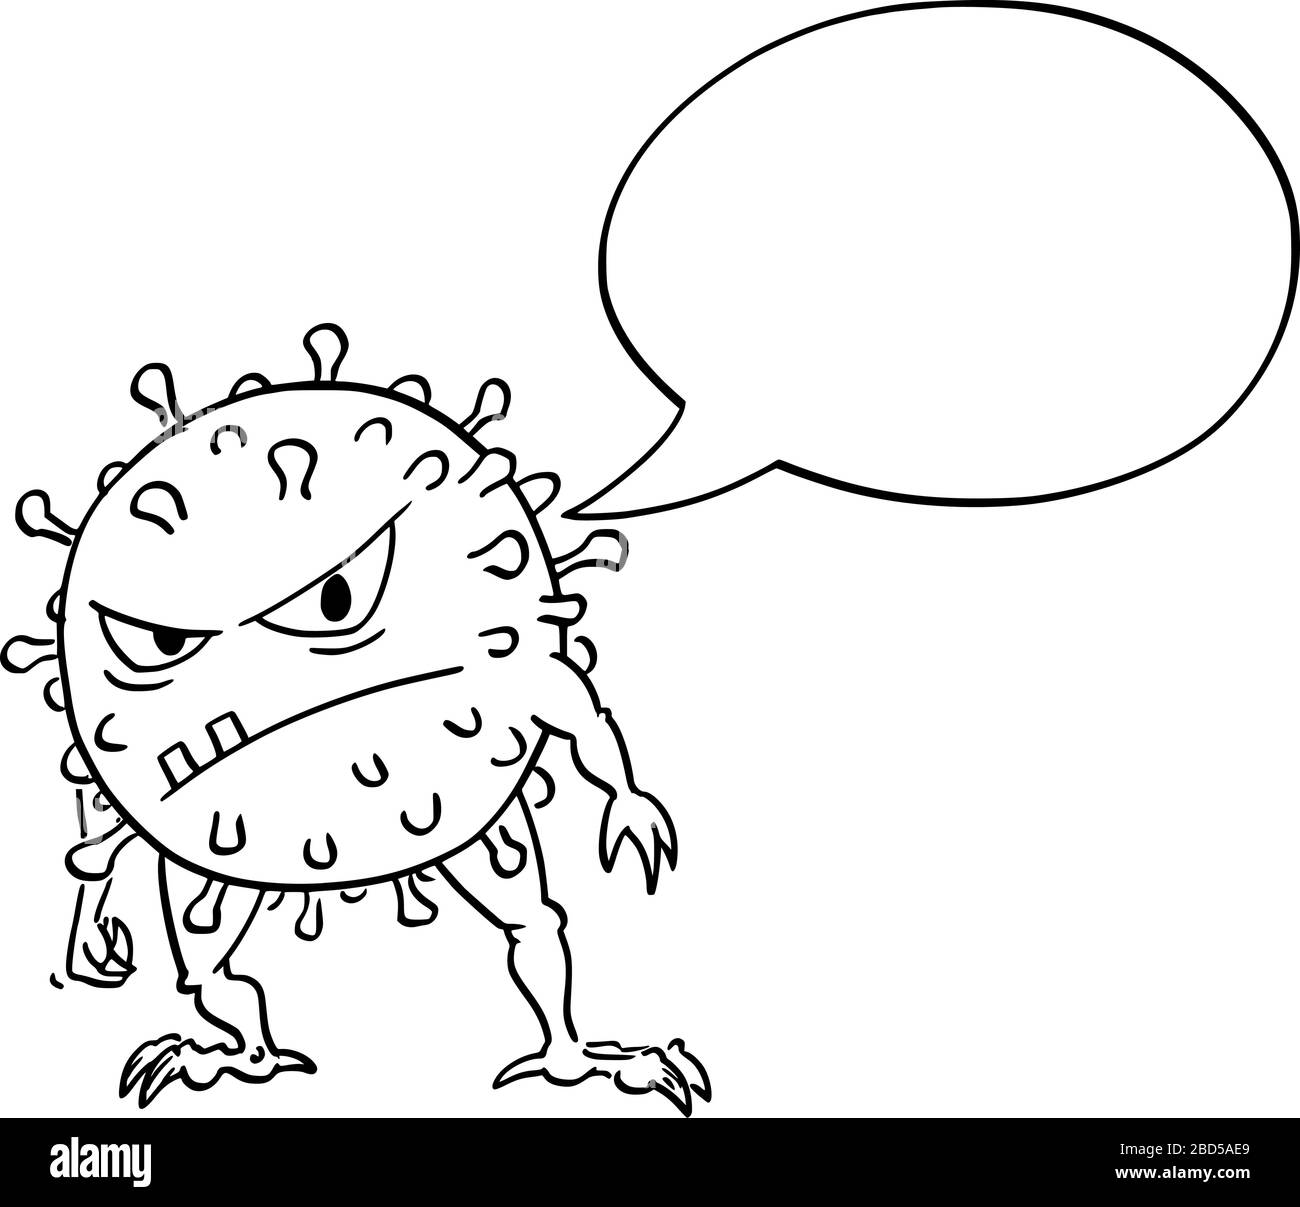 Cartoni animati vettoriali divertente illustrazione di divertente coronavirus pazzo COVID-19 mostro virus con vuoto discorso bolla dire qualcosa. Illustrazione Vettoriale